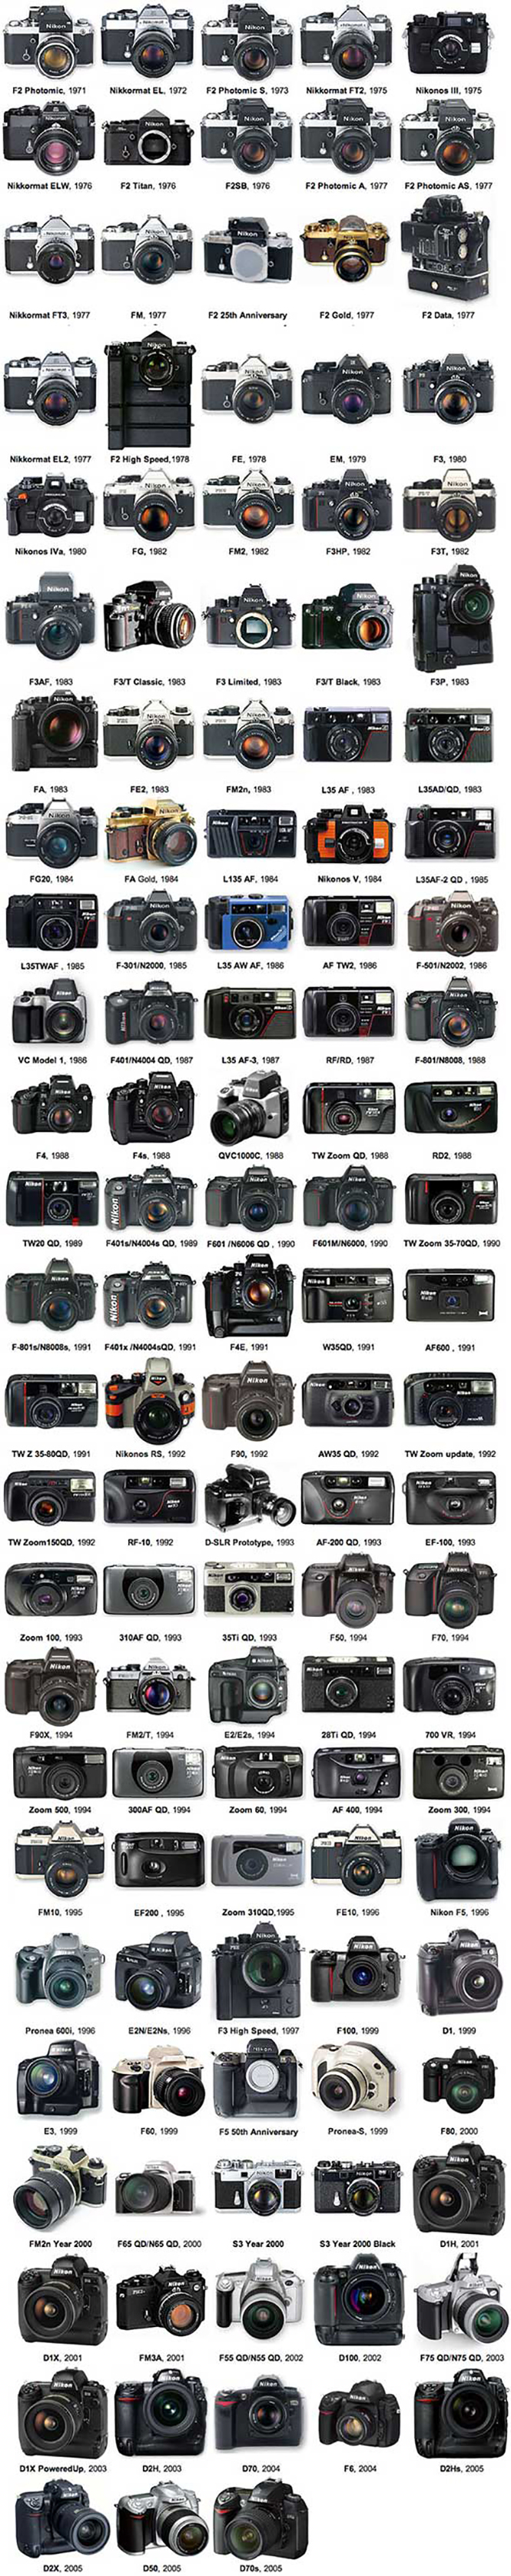 Nikon camera history 